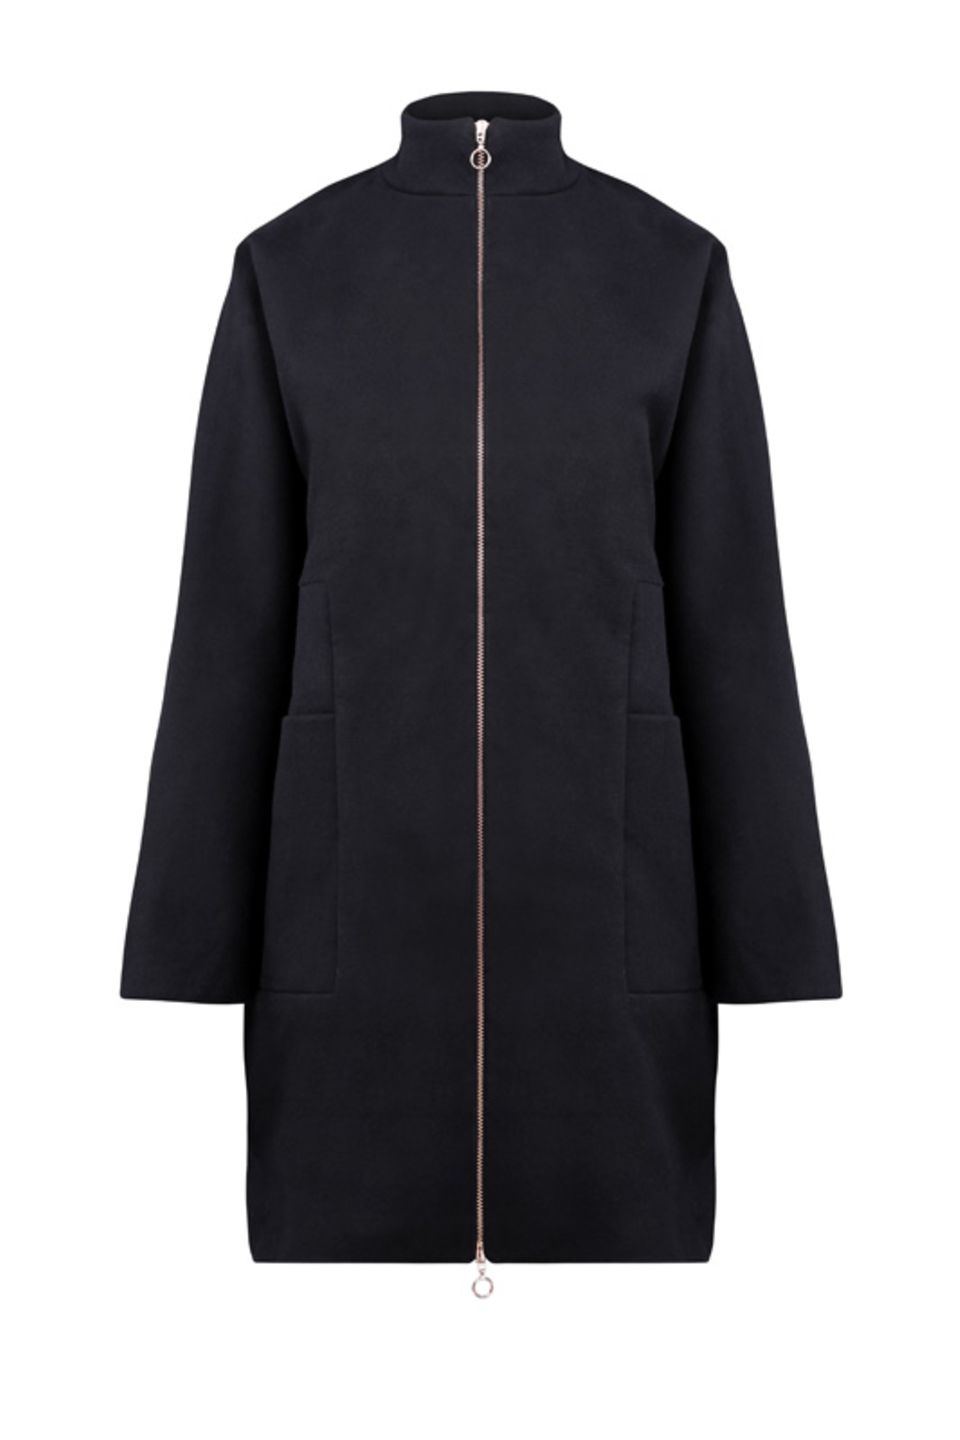 Schwarzer Mantel aus Bio-Baumwolle und recyceltem Polyester mit langem Zipper, 240 Euro.